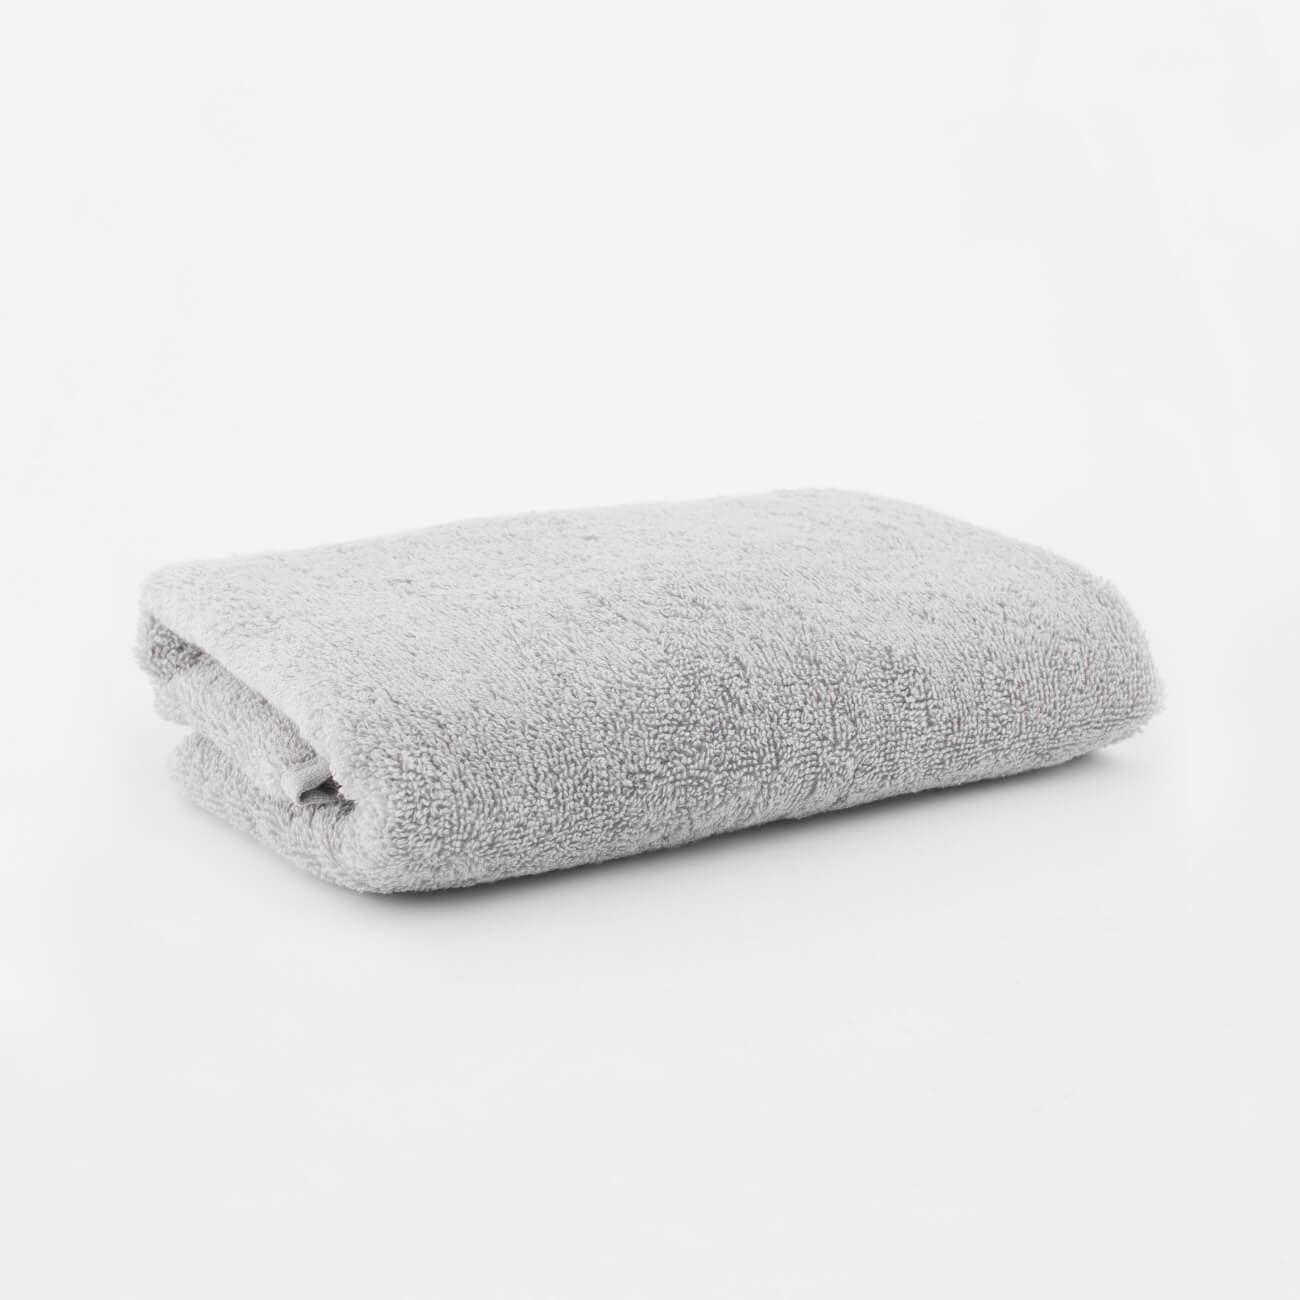 Полотенце, 40х60 см, хлопок, светло-серое, Wellness бумажное полотенце лайма